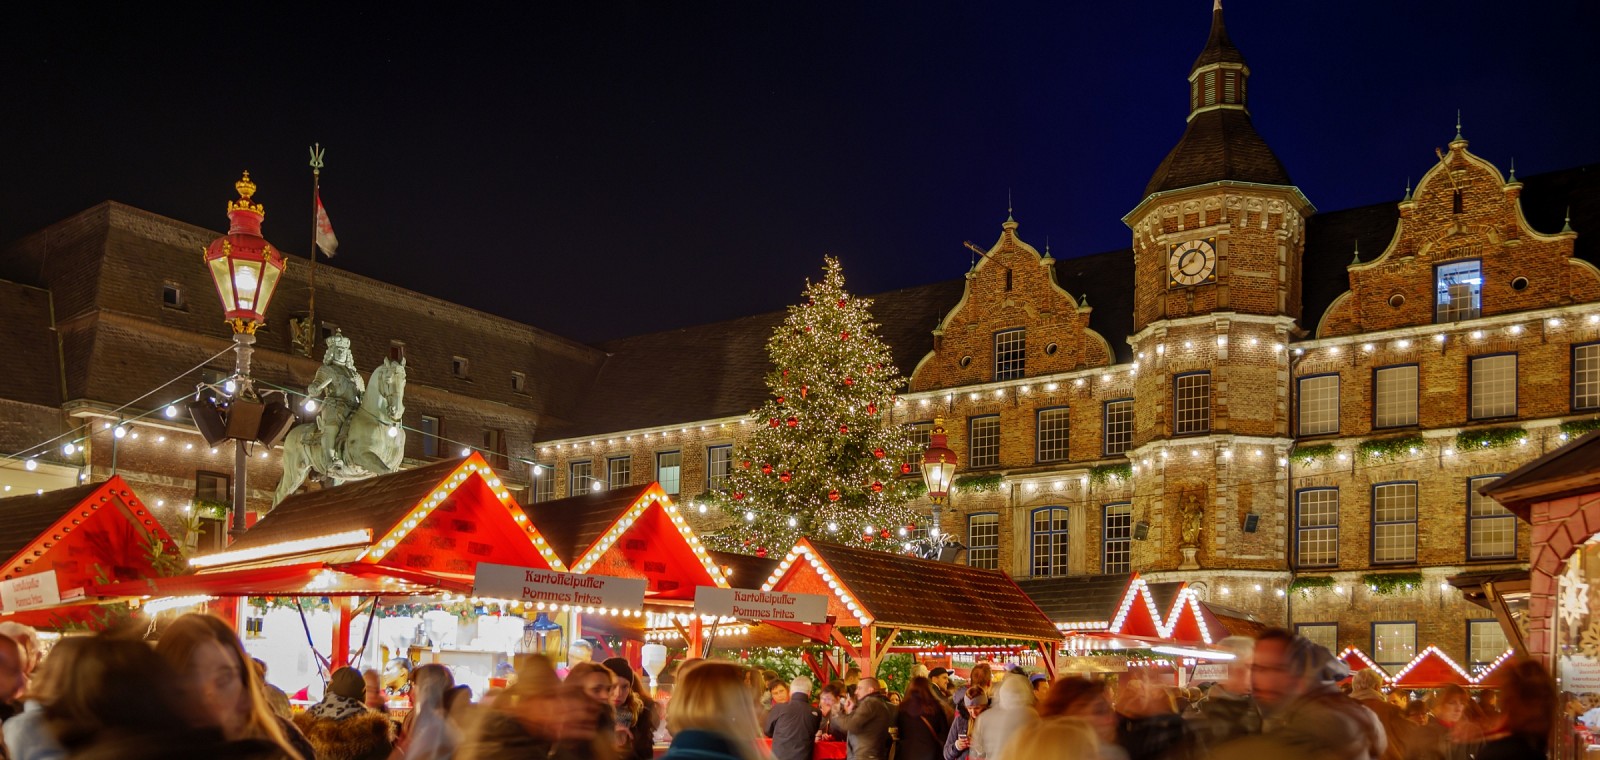 Weihnachtsmarkt in Düsseldorf